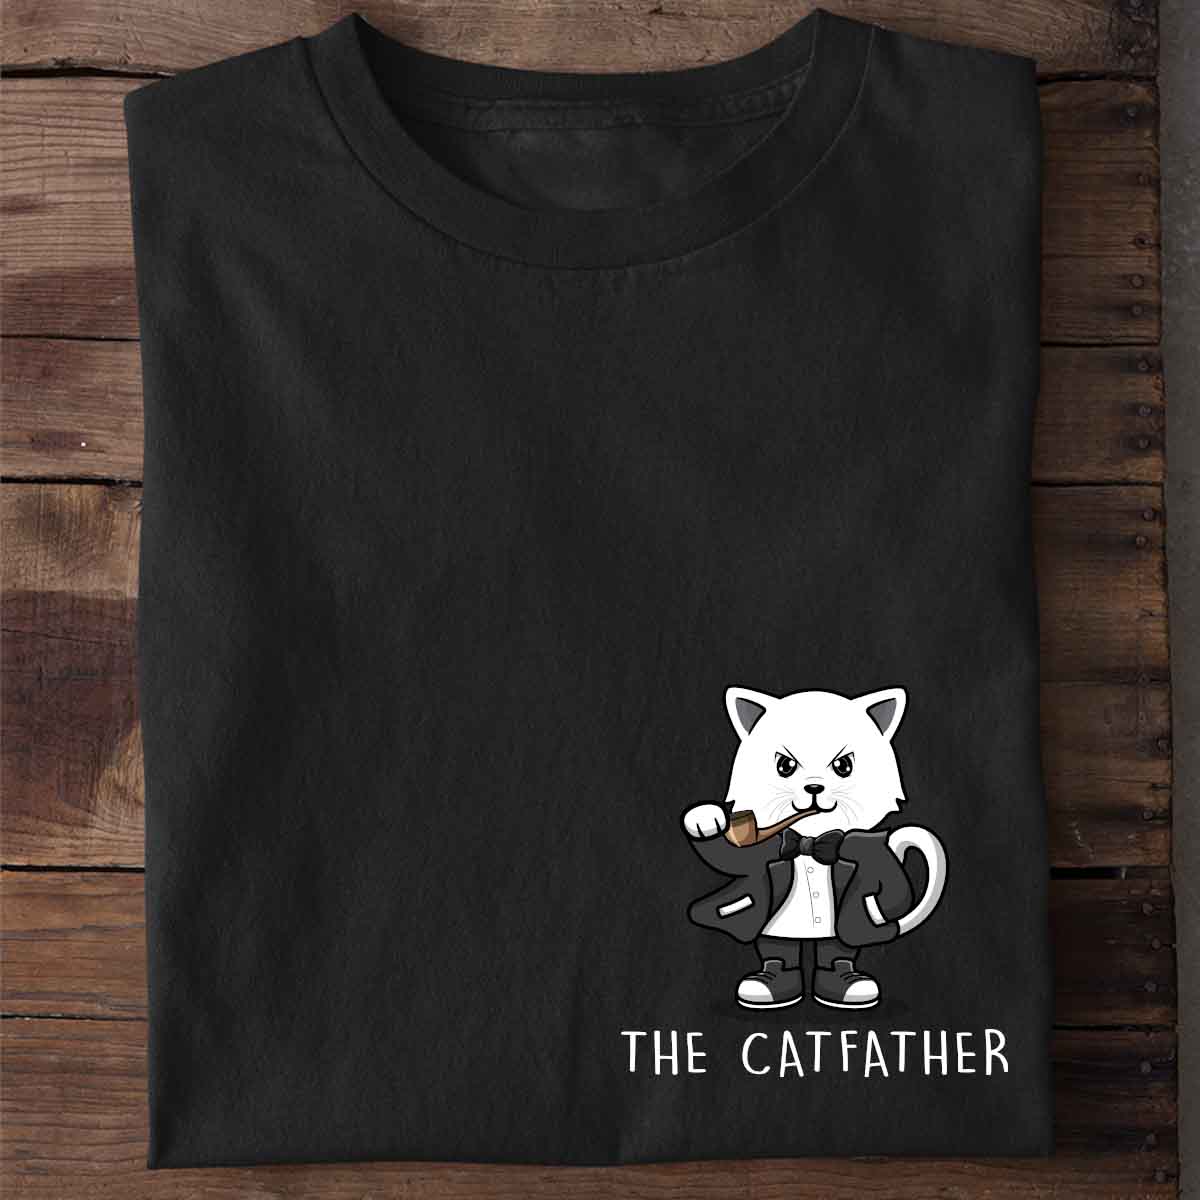 The Catfather - Shirt Unisex Brust